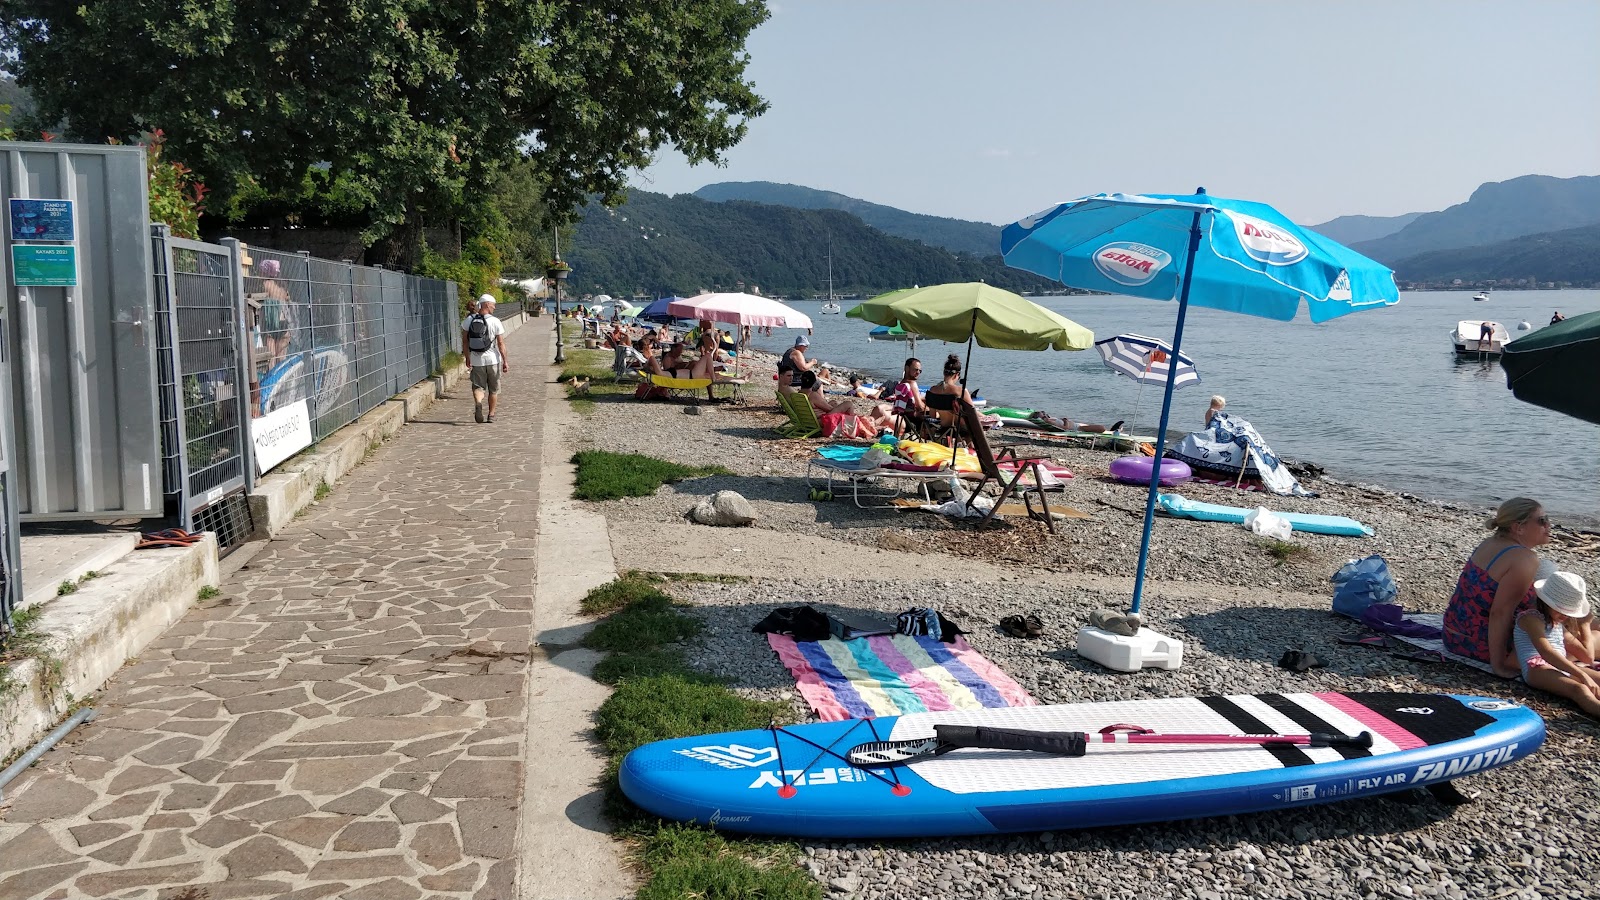 Spiaggia Pinzone的照片 - 适合度假的宠物友好场所